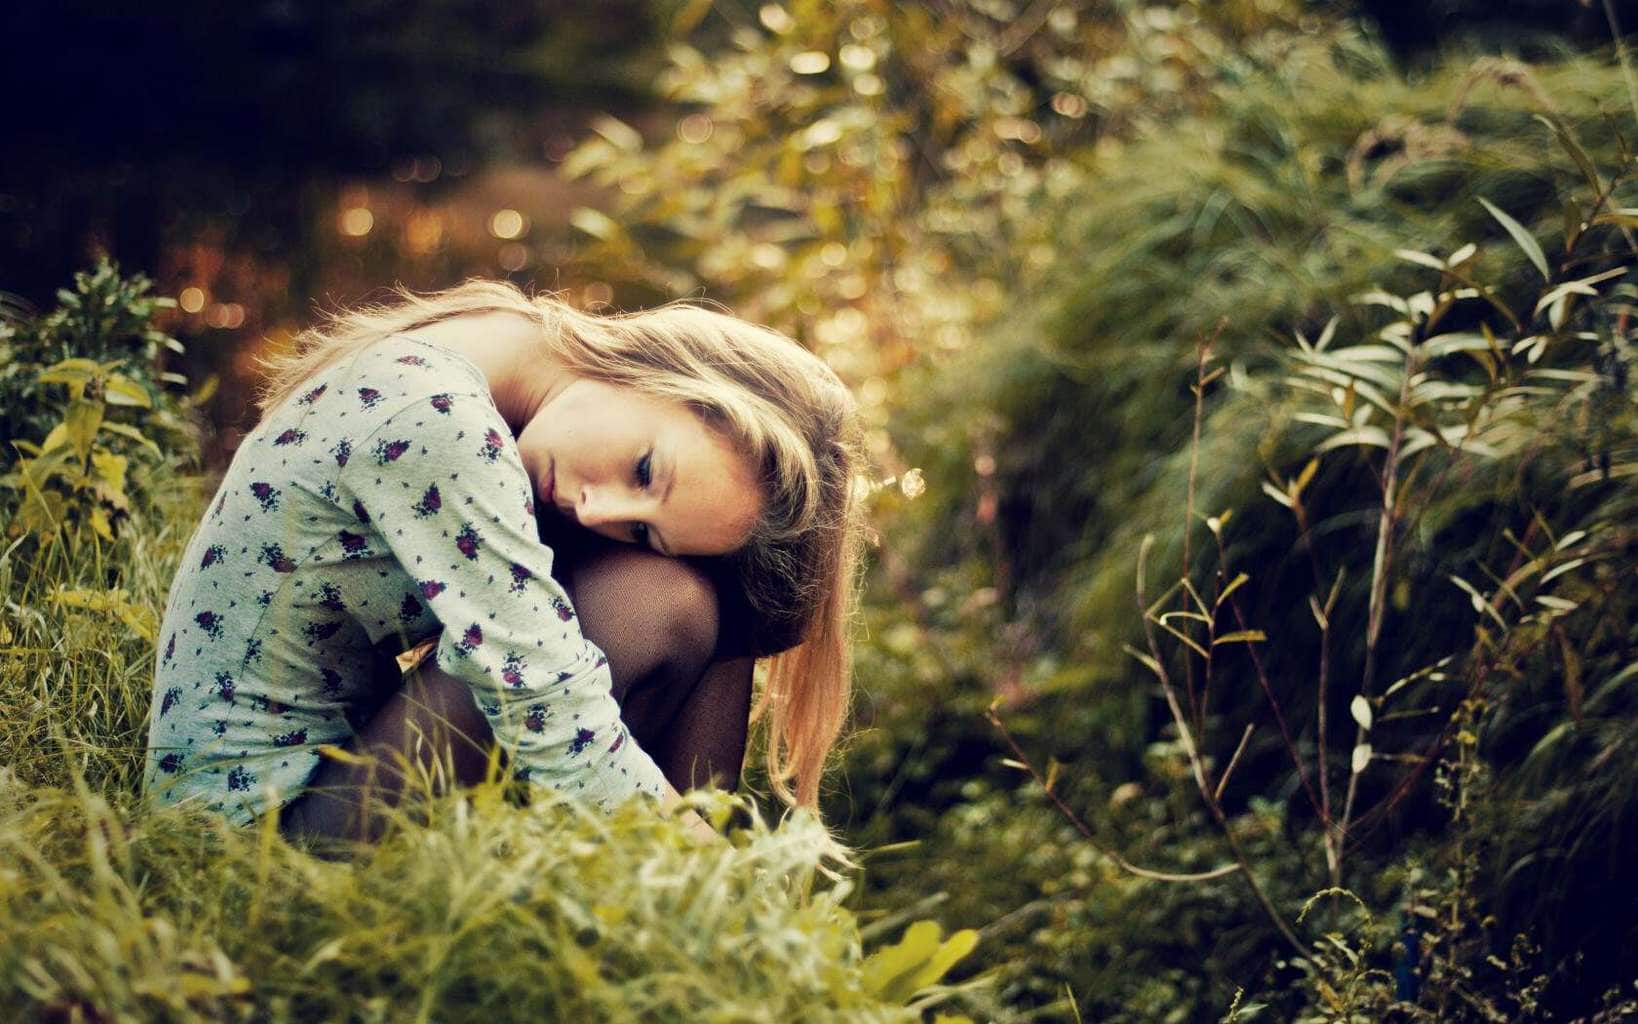 슬픈 소녀 벽지,자연,잔디,아름다움,나무,사진술